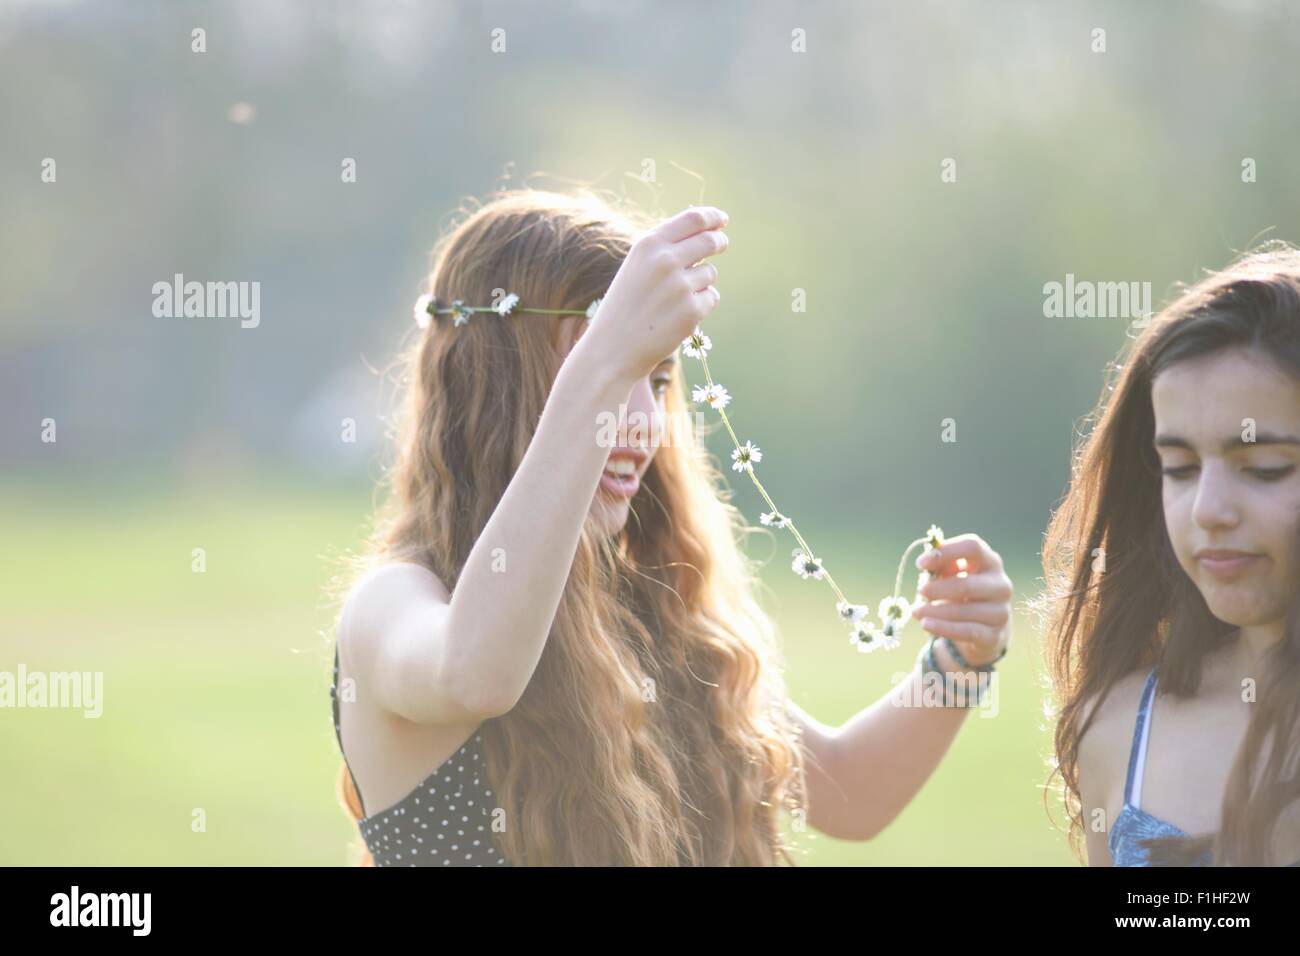 Zwei Mädchen im Teenageralter auf Daisy-Chain Kopfschmuck im park Stockfoto